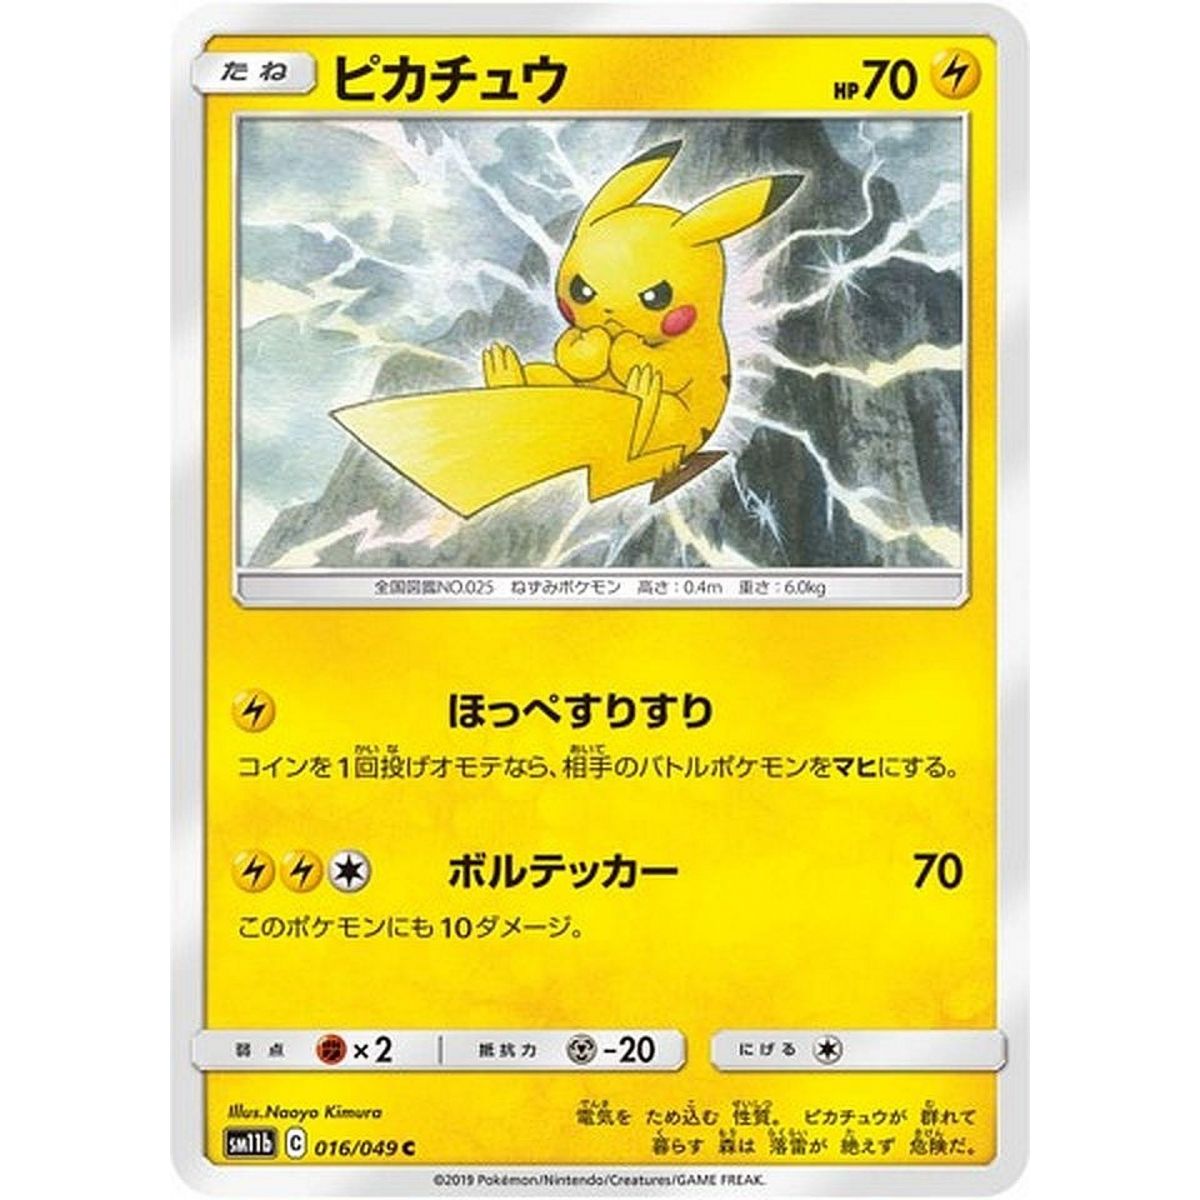 Item Pikachu 016/049 Dream League Commune Unlimited Japanese